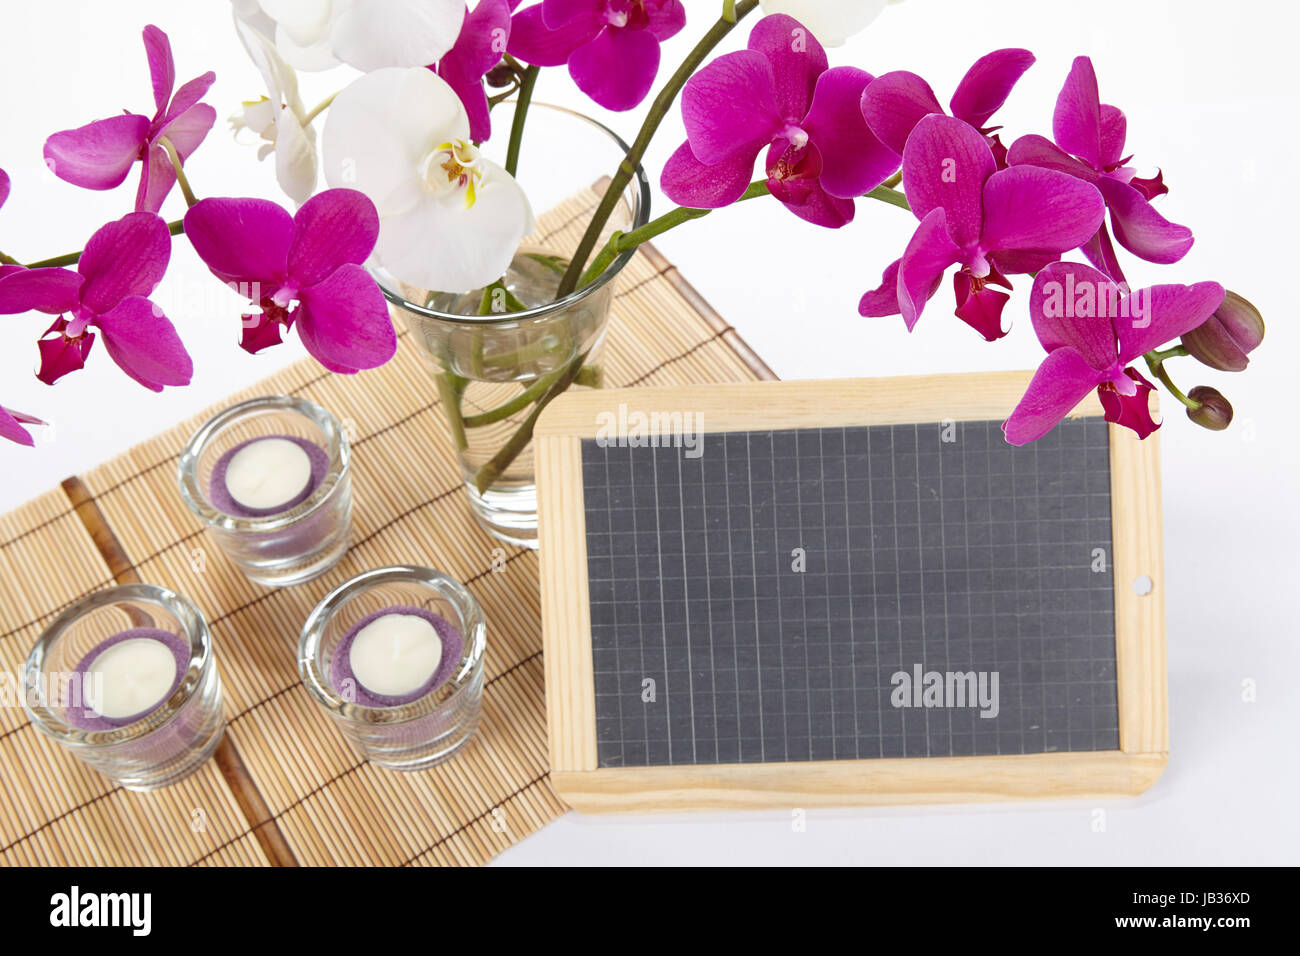 Ein Bouquet von weißen und lila Orchideen in einer Vase auf einem Tischset aus Bambus steht. Ein wenig Schiefer kann als ein freies Textfeld verwendet werden. Stockfoto